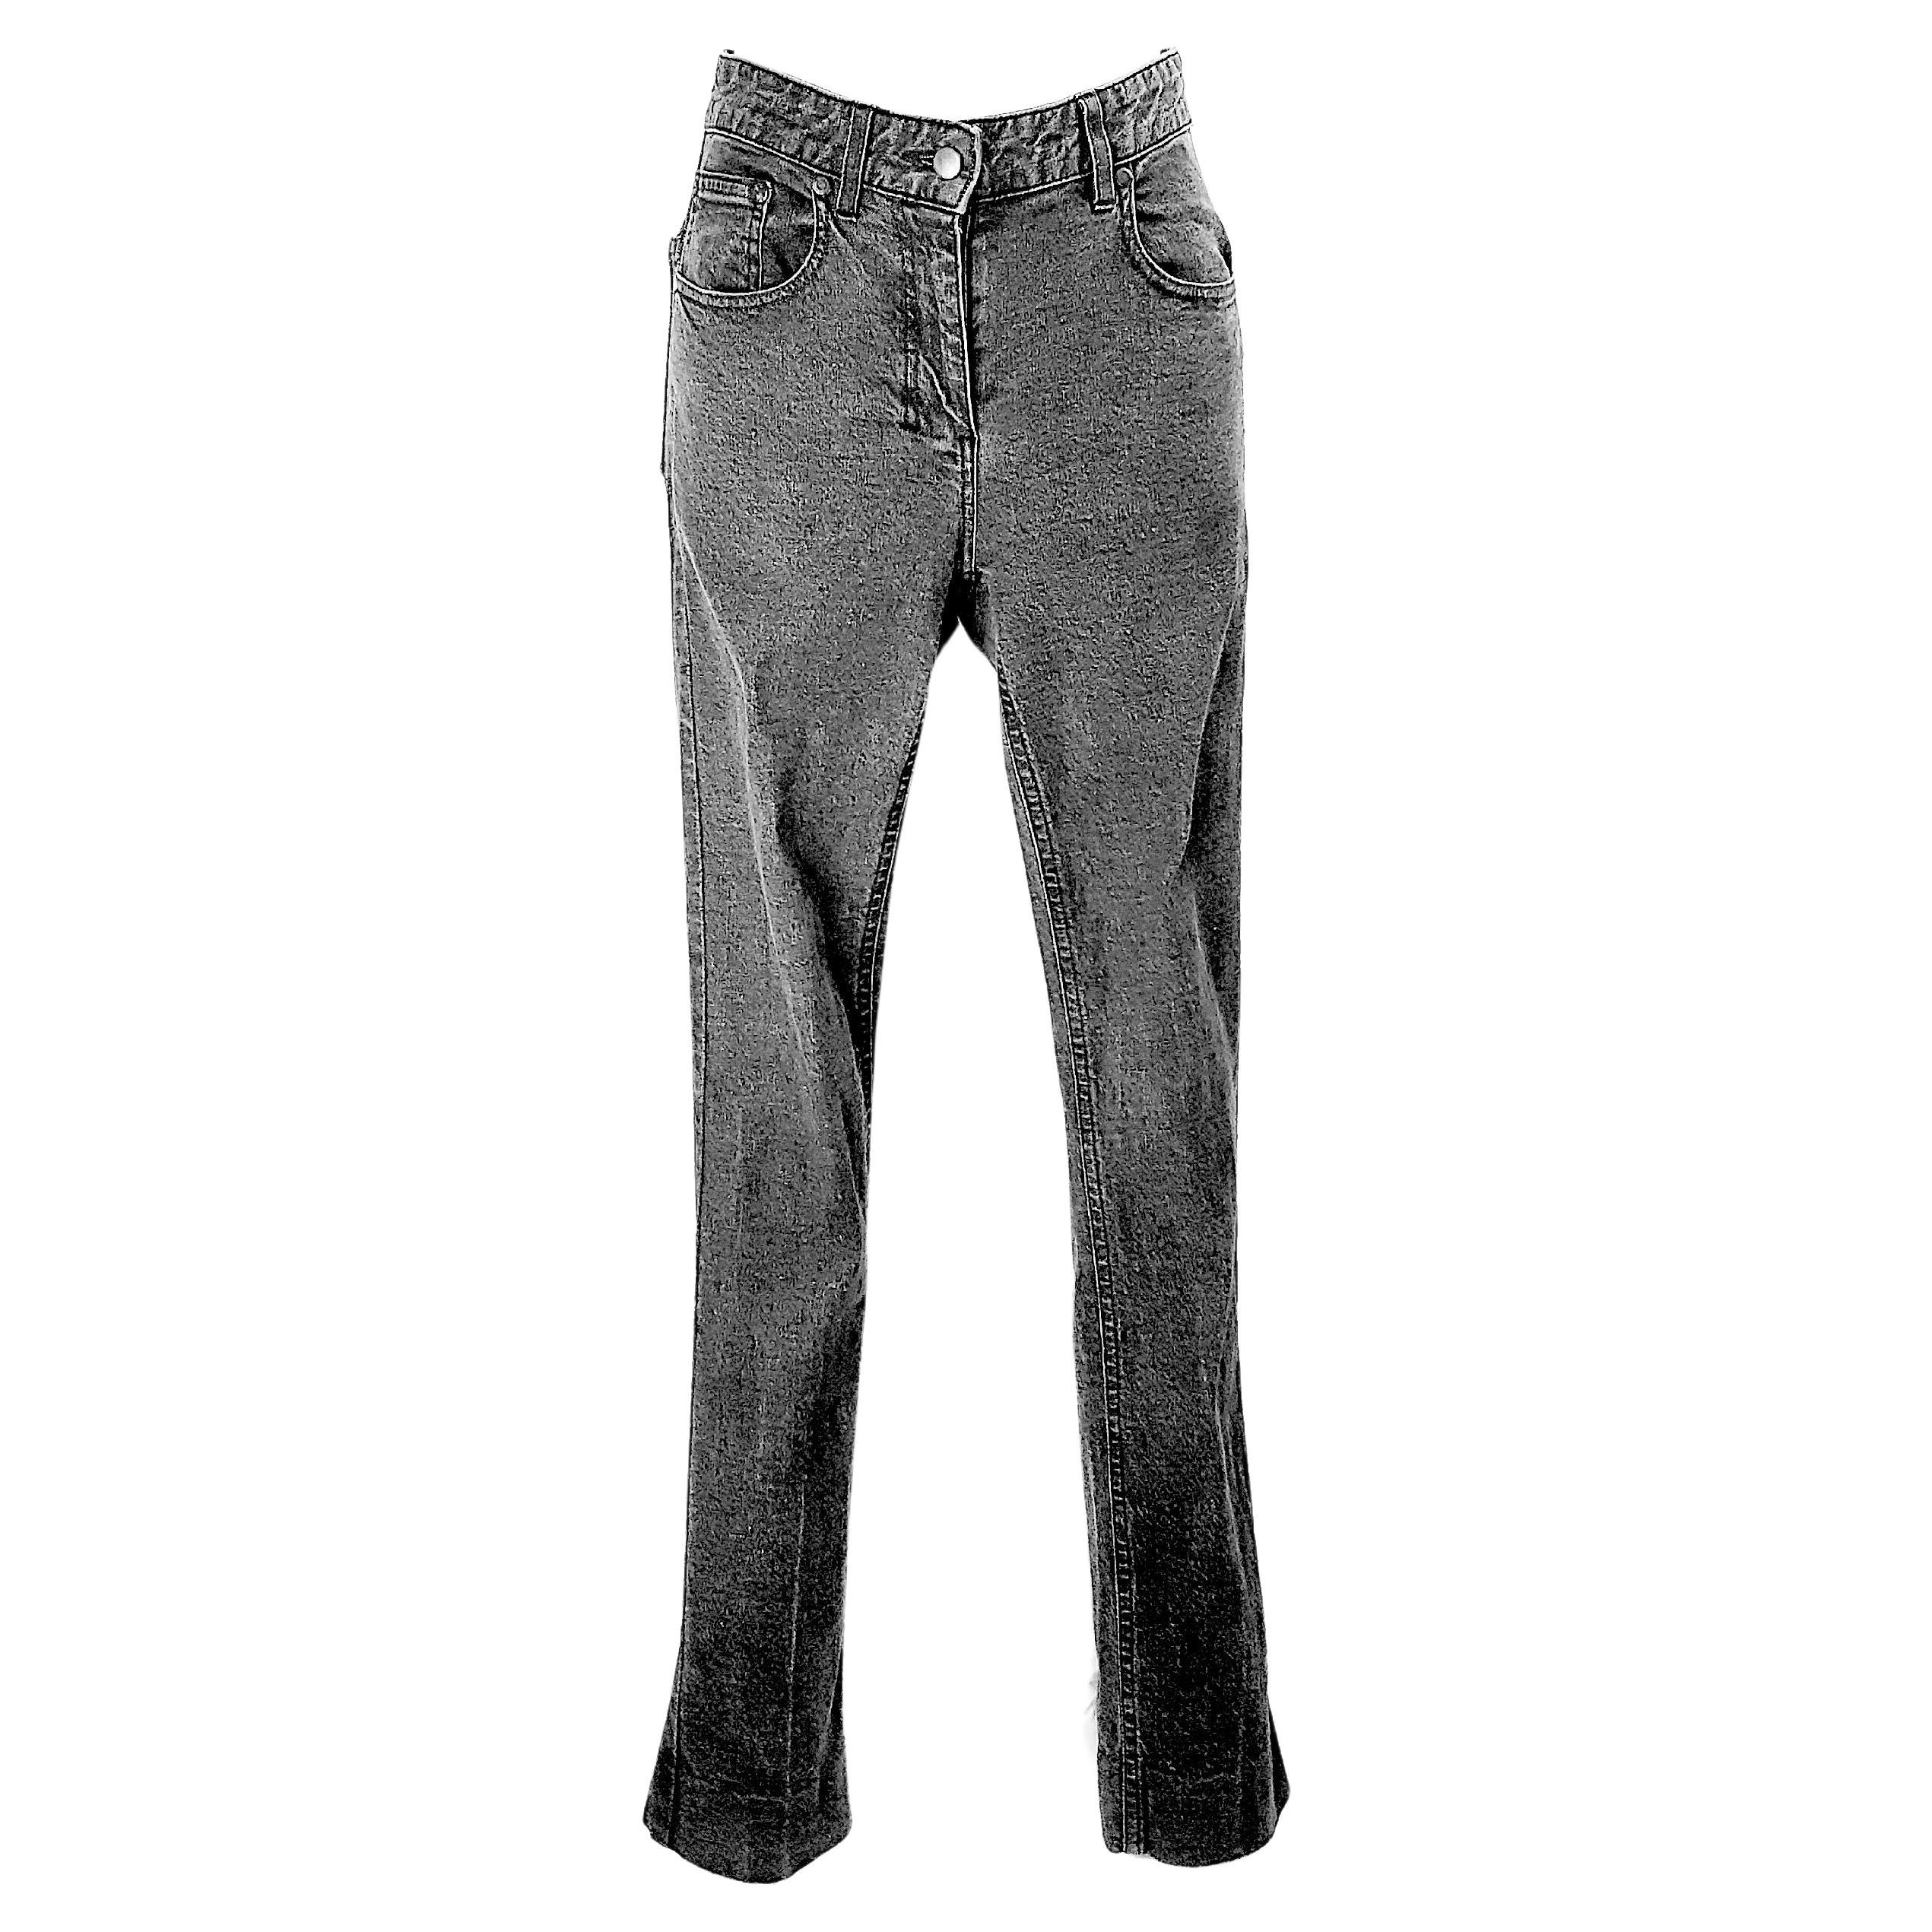 Dans le style sexy et moulant que le Texan Tom Ford a introduit en tant qu'ancien directeur artistique d'Yves Saint Laurent Rive Gauche alors que l'estimé créateur français éponyme prenait sa retraite au début des années 2000, cette paire de jeans